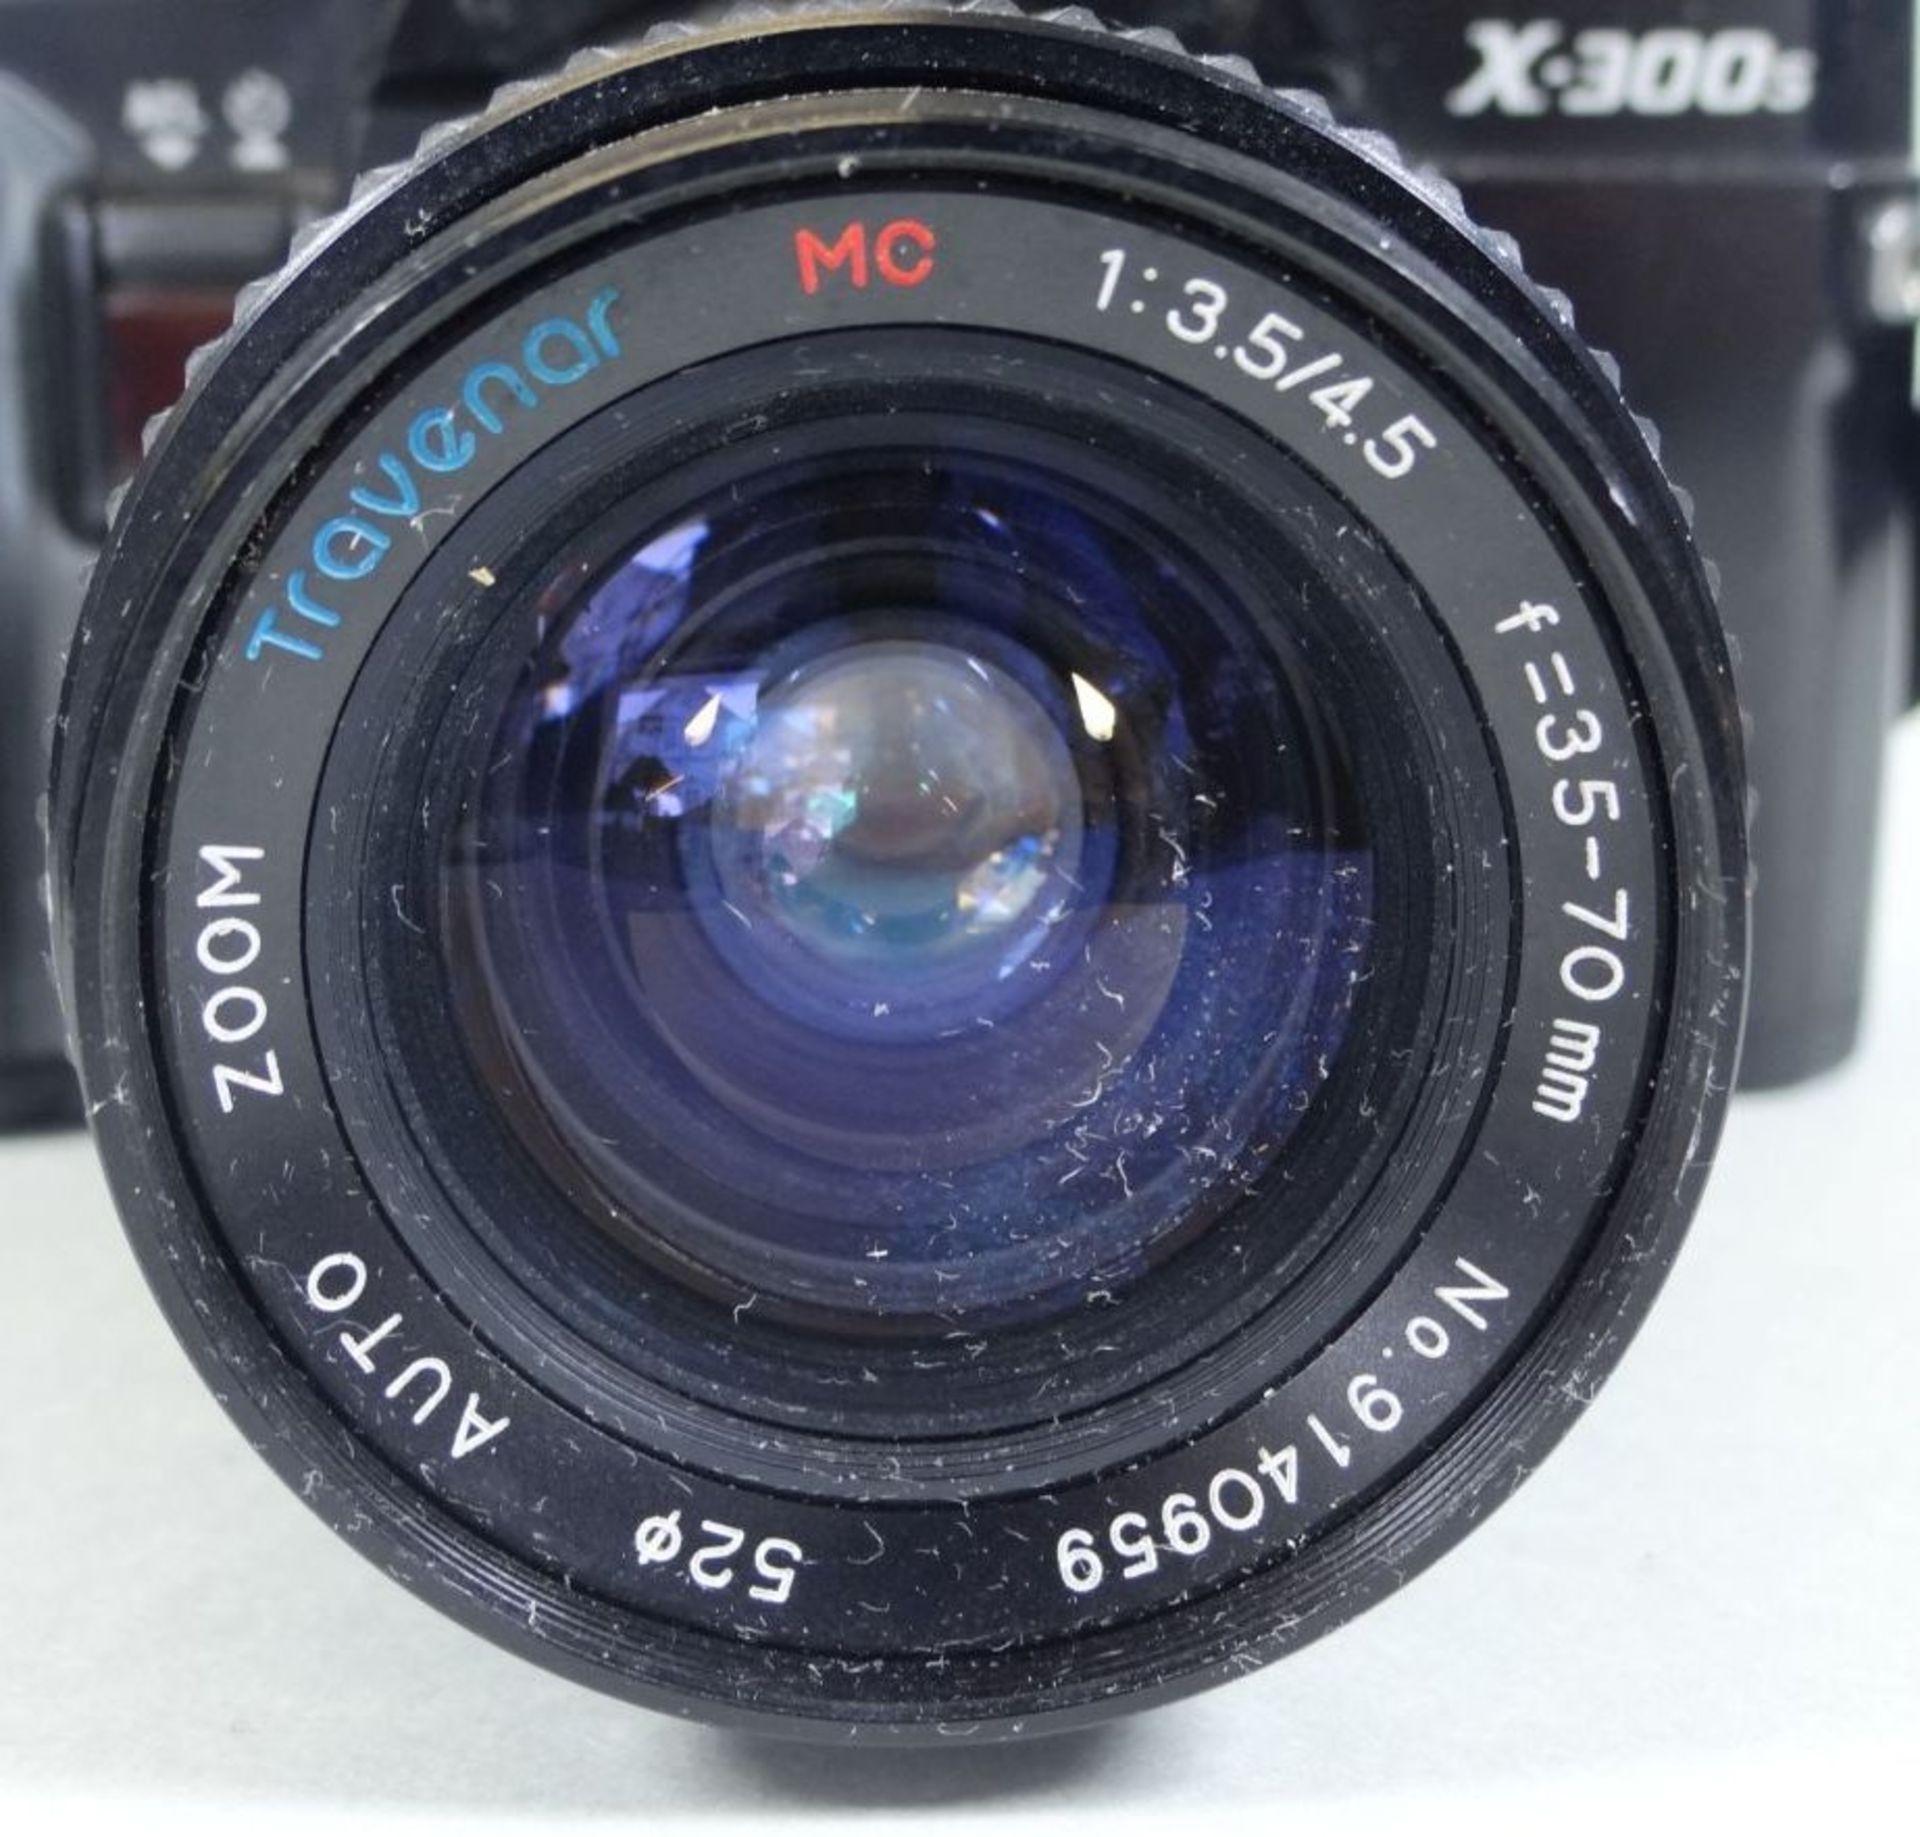 Spiegelreflex "Minolta X-300s" mit Blitzlicht - Bild 2 aus 4